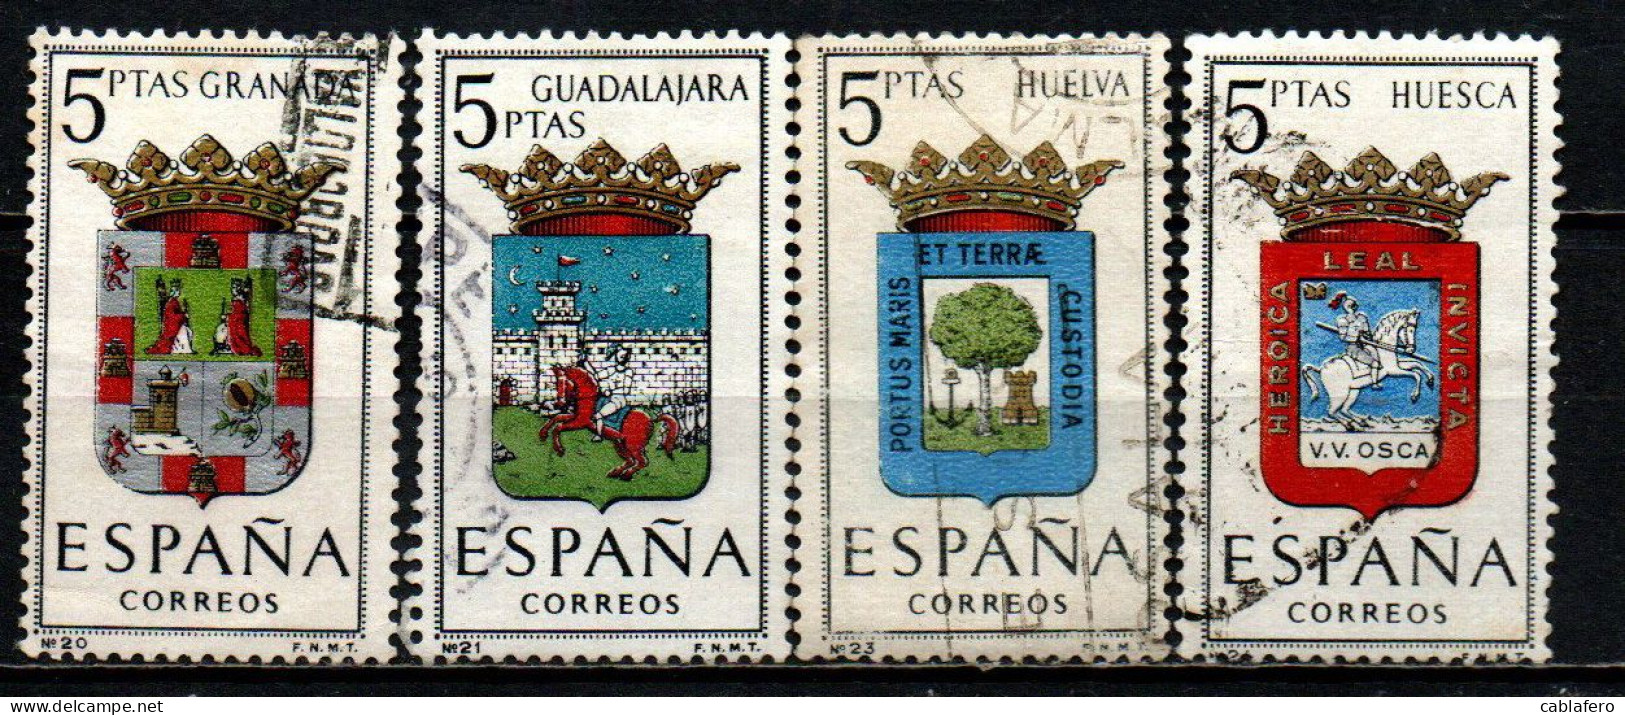 SPAGNA - 1963 - STEMMI DELLE PROVINCE SPAGNOLE: GRANADA, GUADALAJARA, HUELVA, HUESCA - USATI - Usati